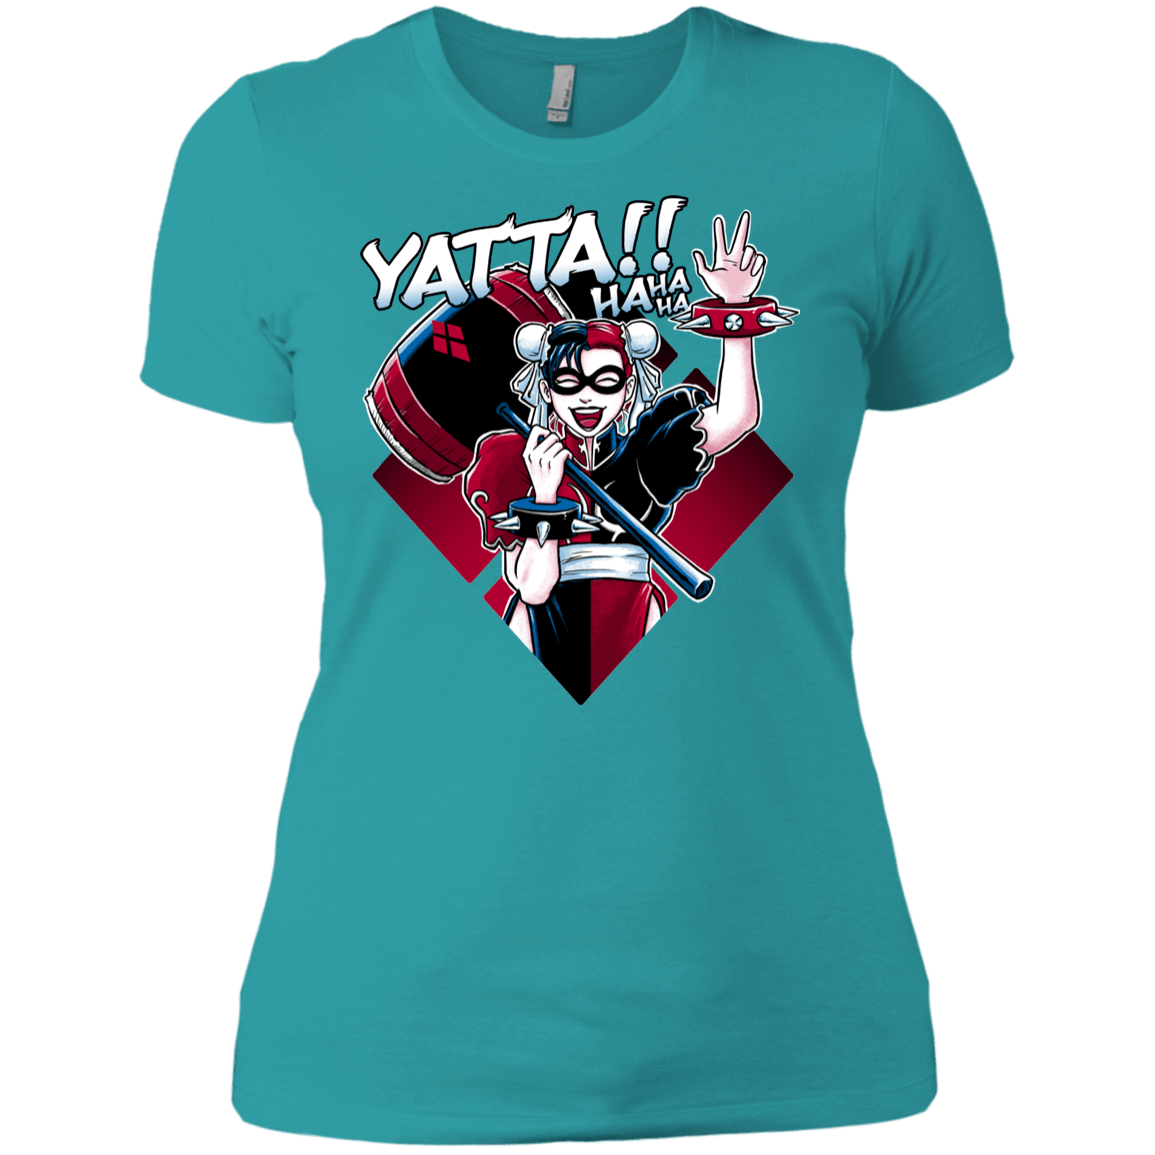 T-Shirts Tahiti Blue / X-Small Harley Yatta Women's Premium T-Shirt